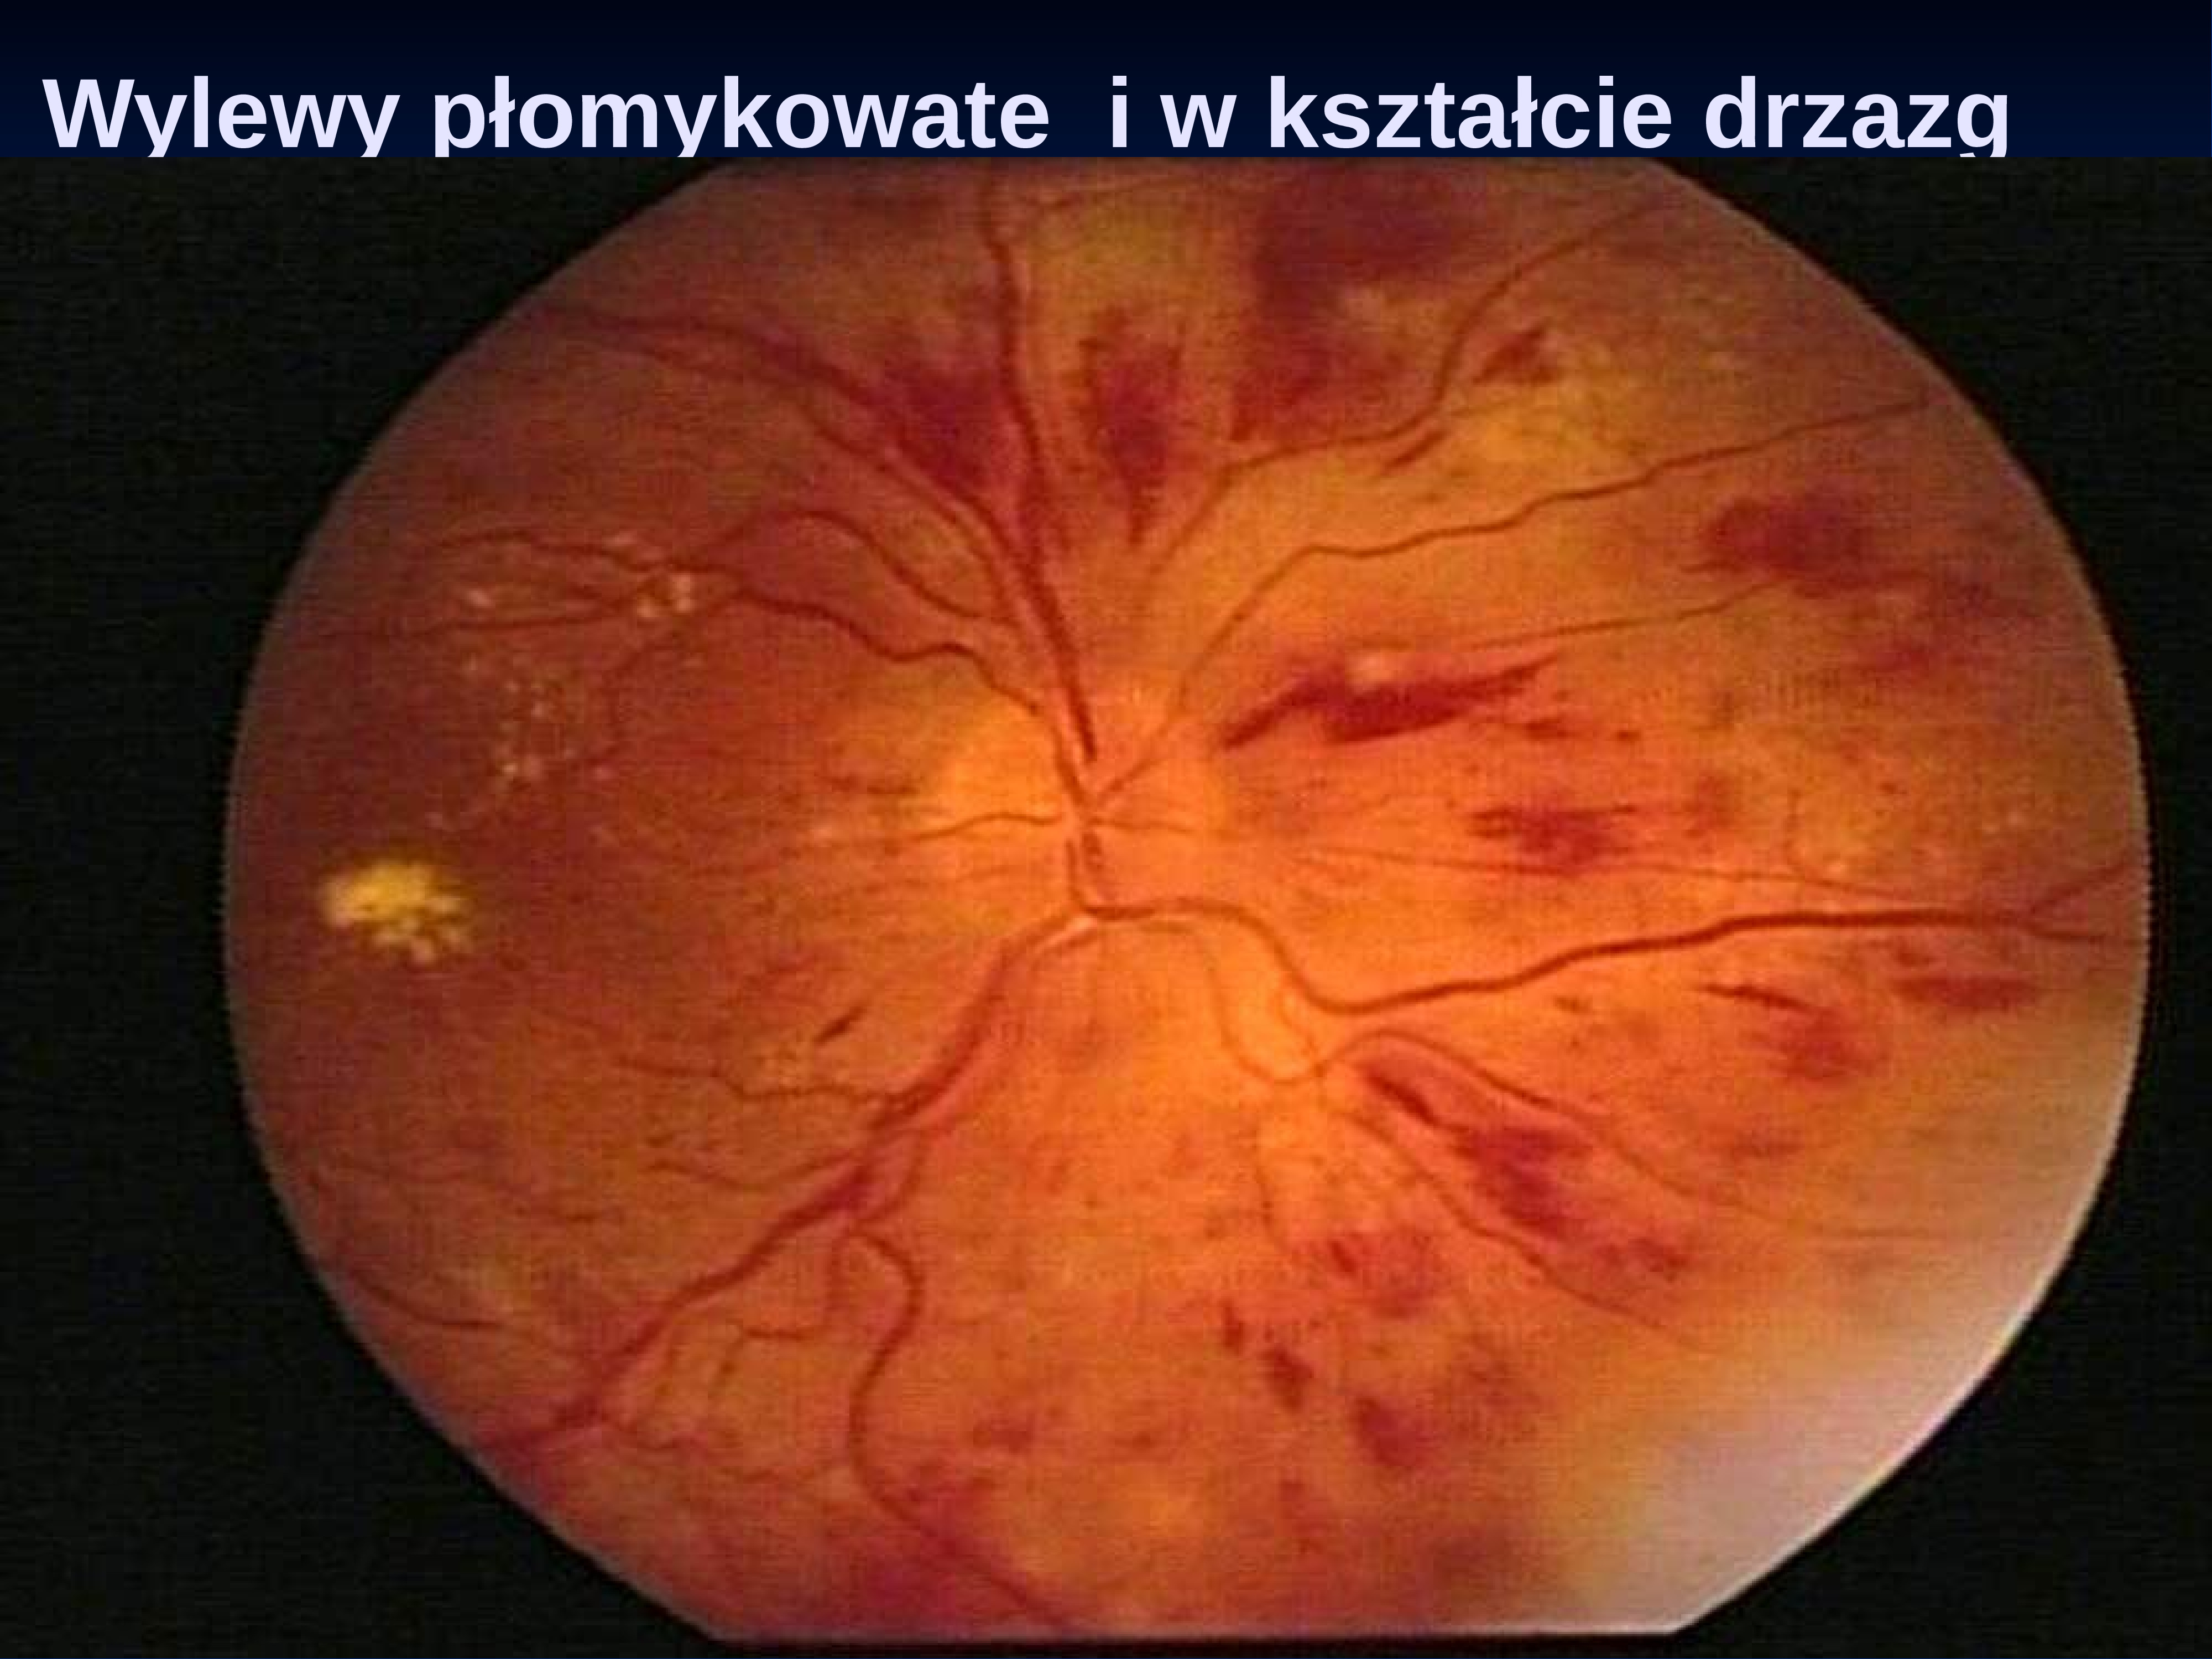 Изменение на глазном дне. Гипертоническая ретинопатия глазное дно. Посттромботическая ретинопатия. Гипертоническая ангиопатия и ретинопатия. Почечная ретинопатия сетчатки.